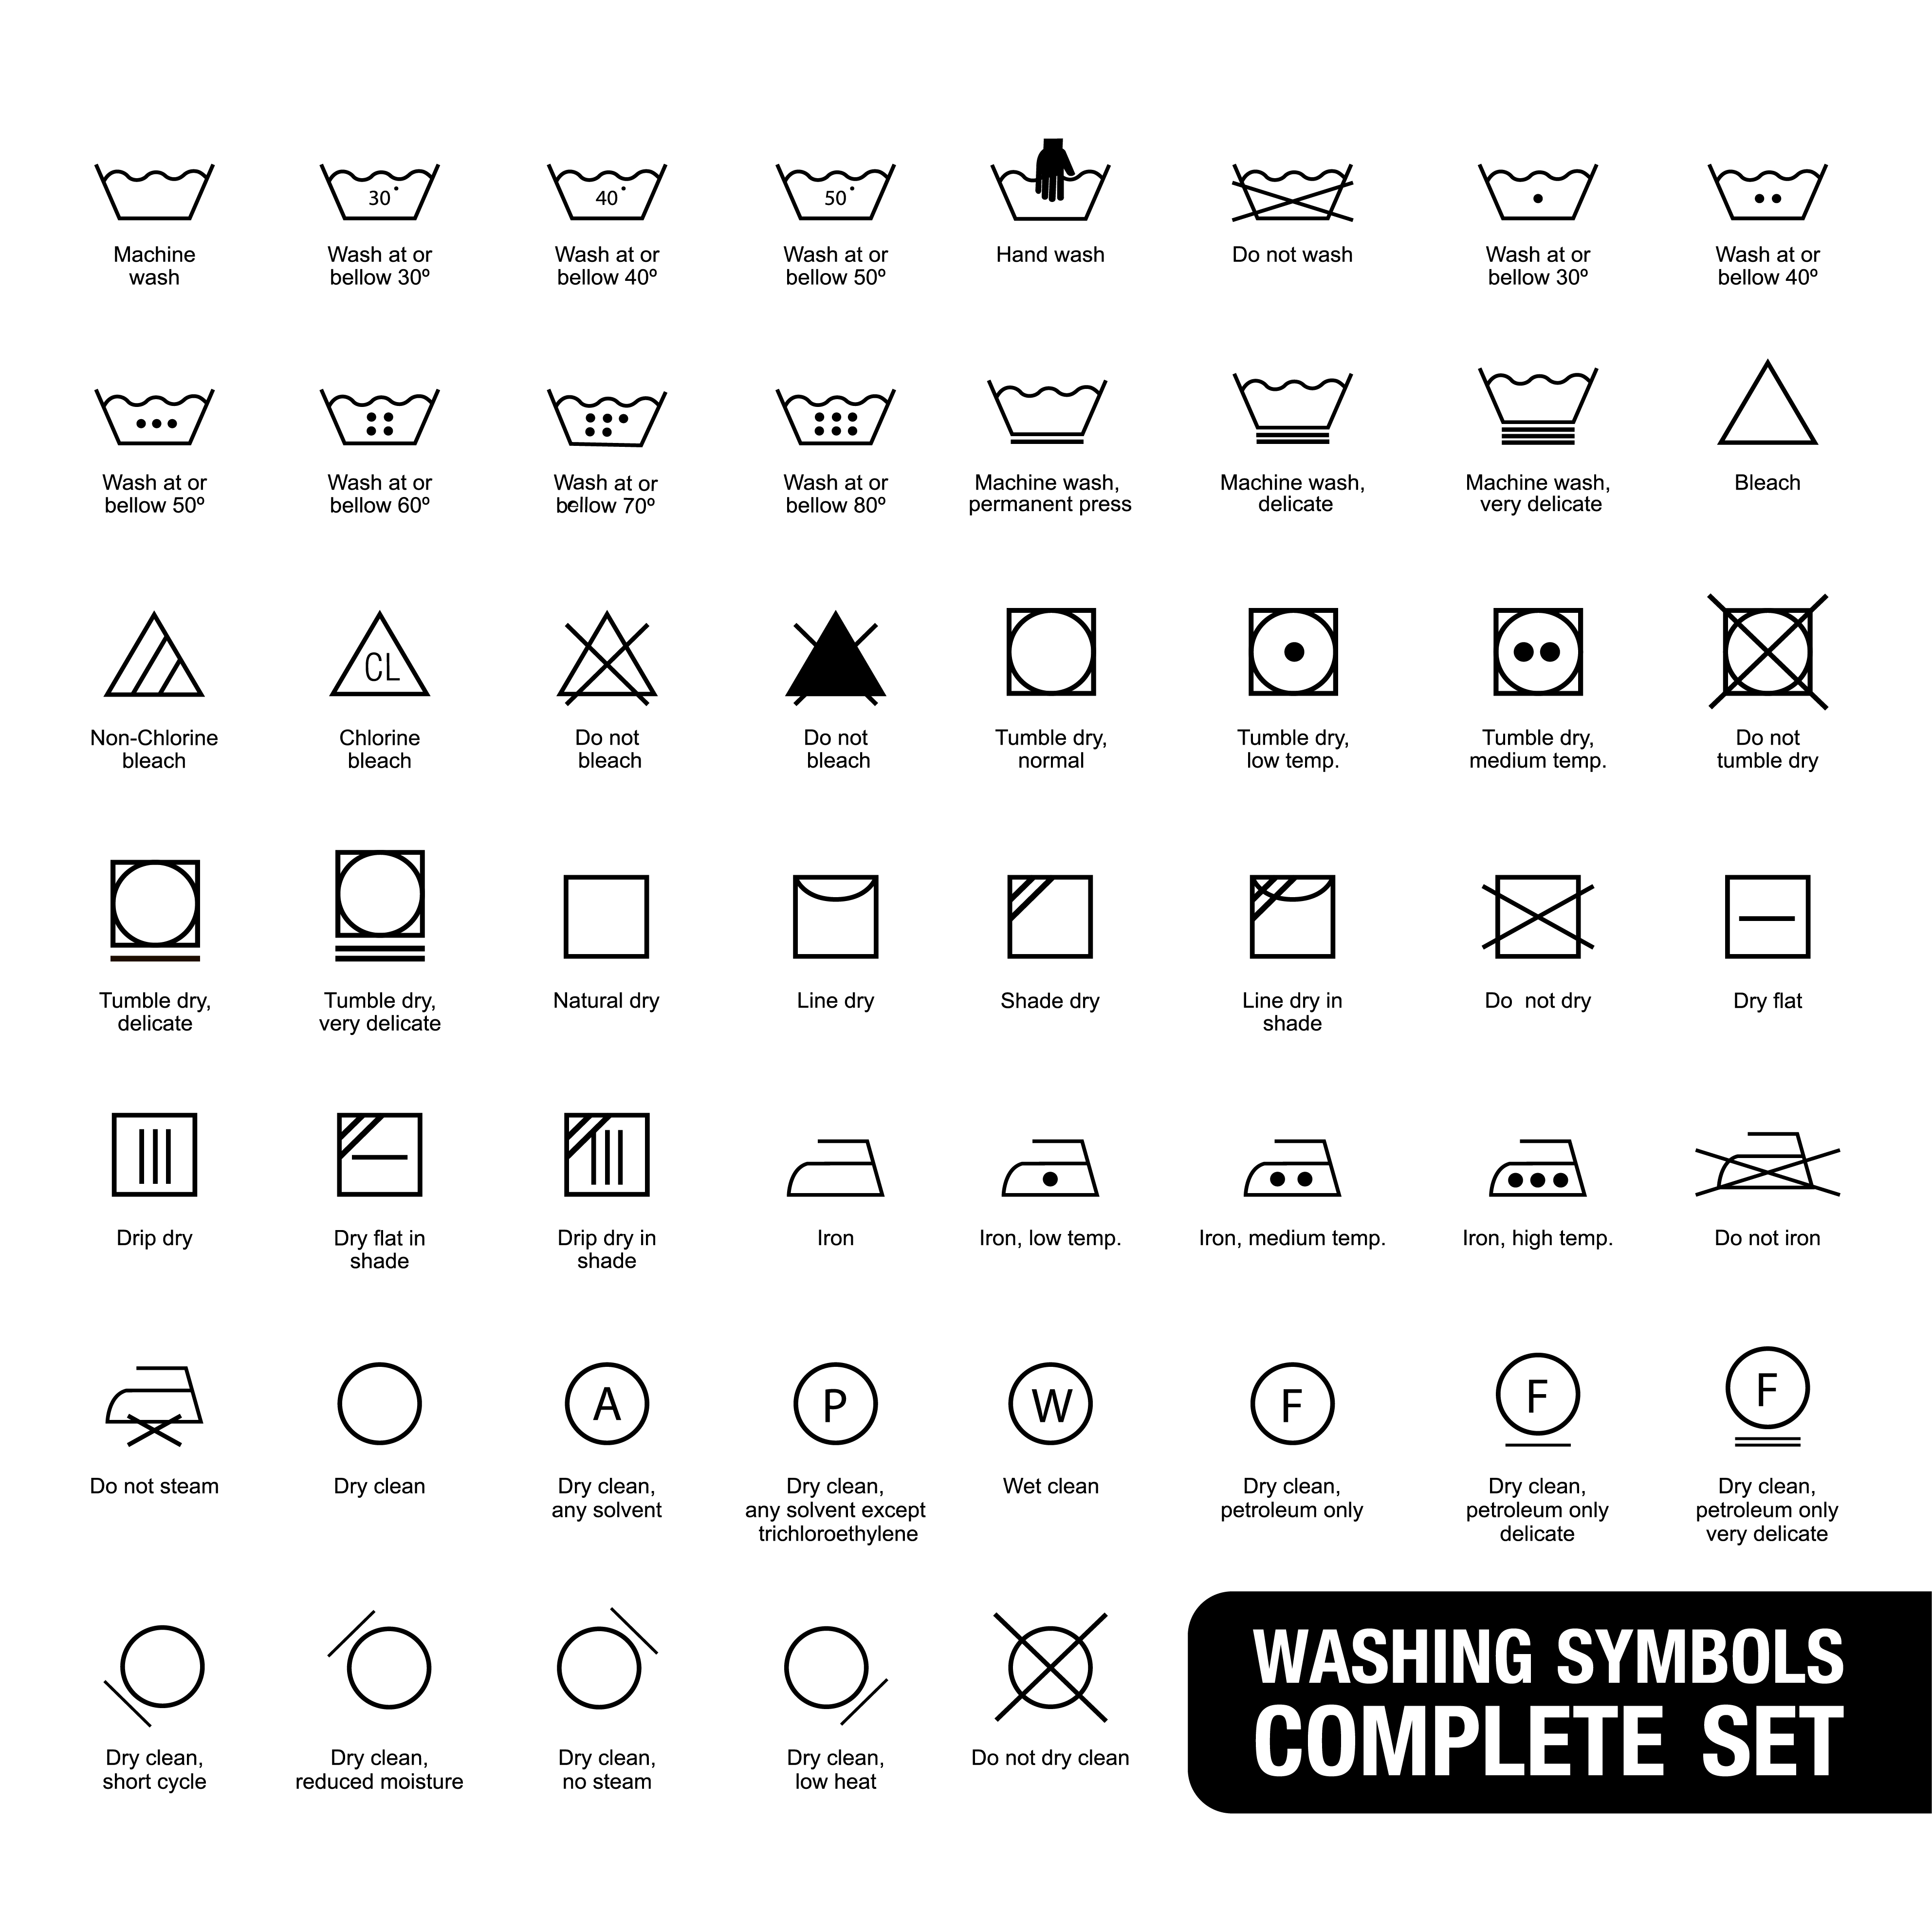 conjunto de símbolos completo de ícones de aplicativos de jogos 4675379  Vetor no Vecteezy